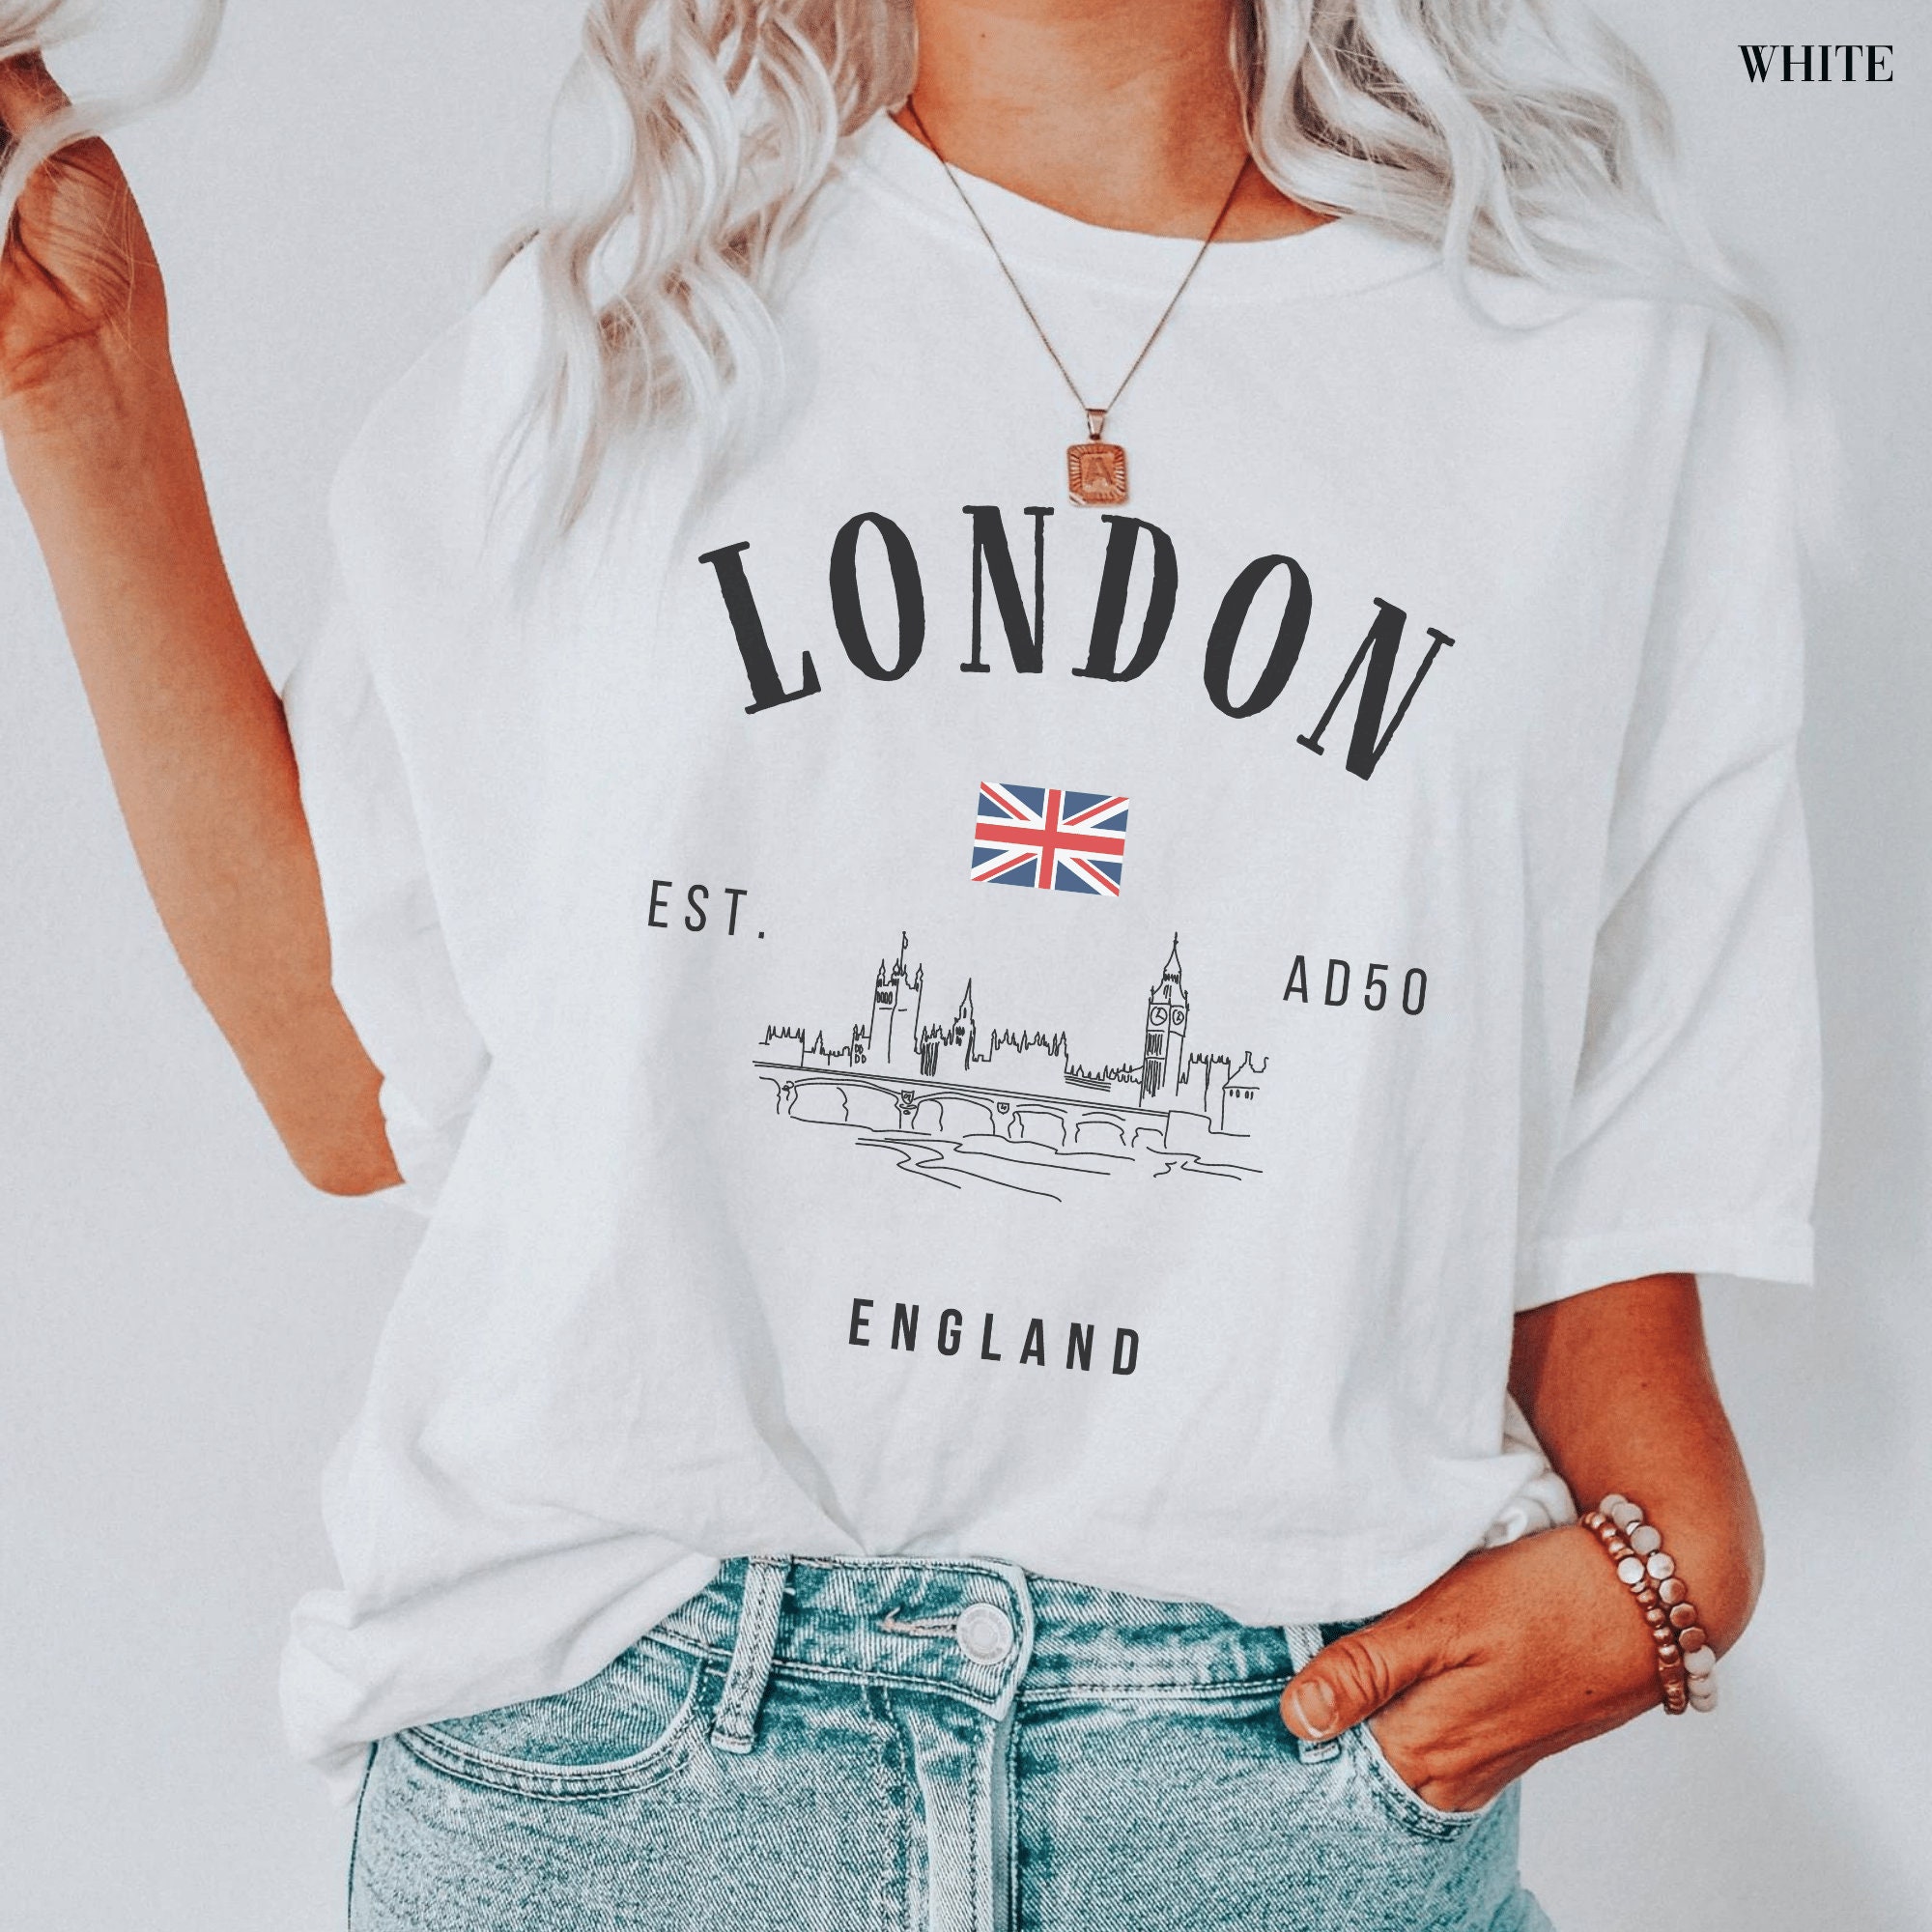 London Shirt England Tshirt British Clothing Womens Apparel - Etsy